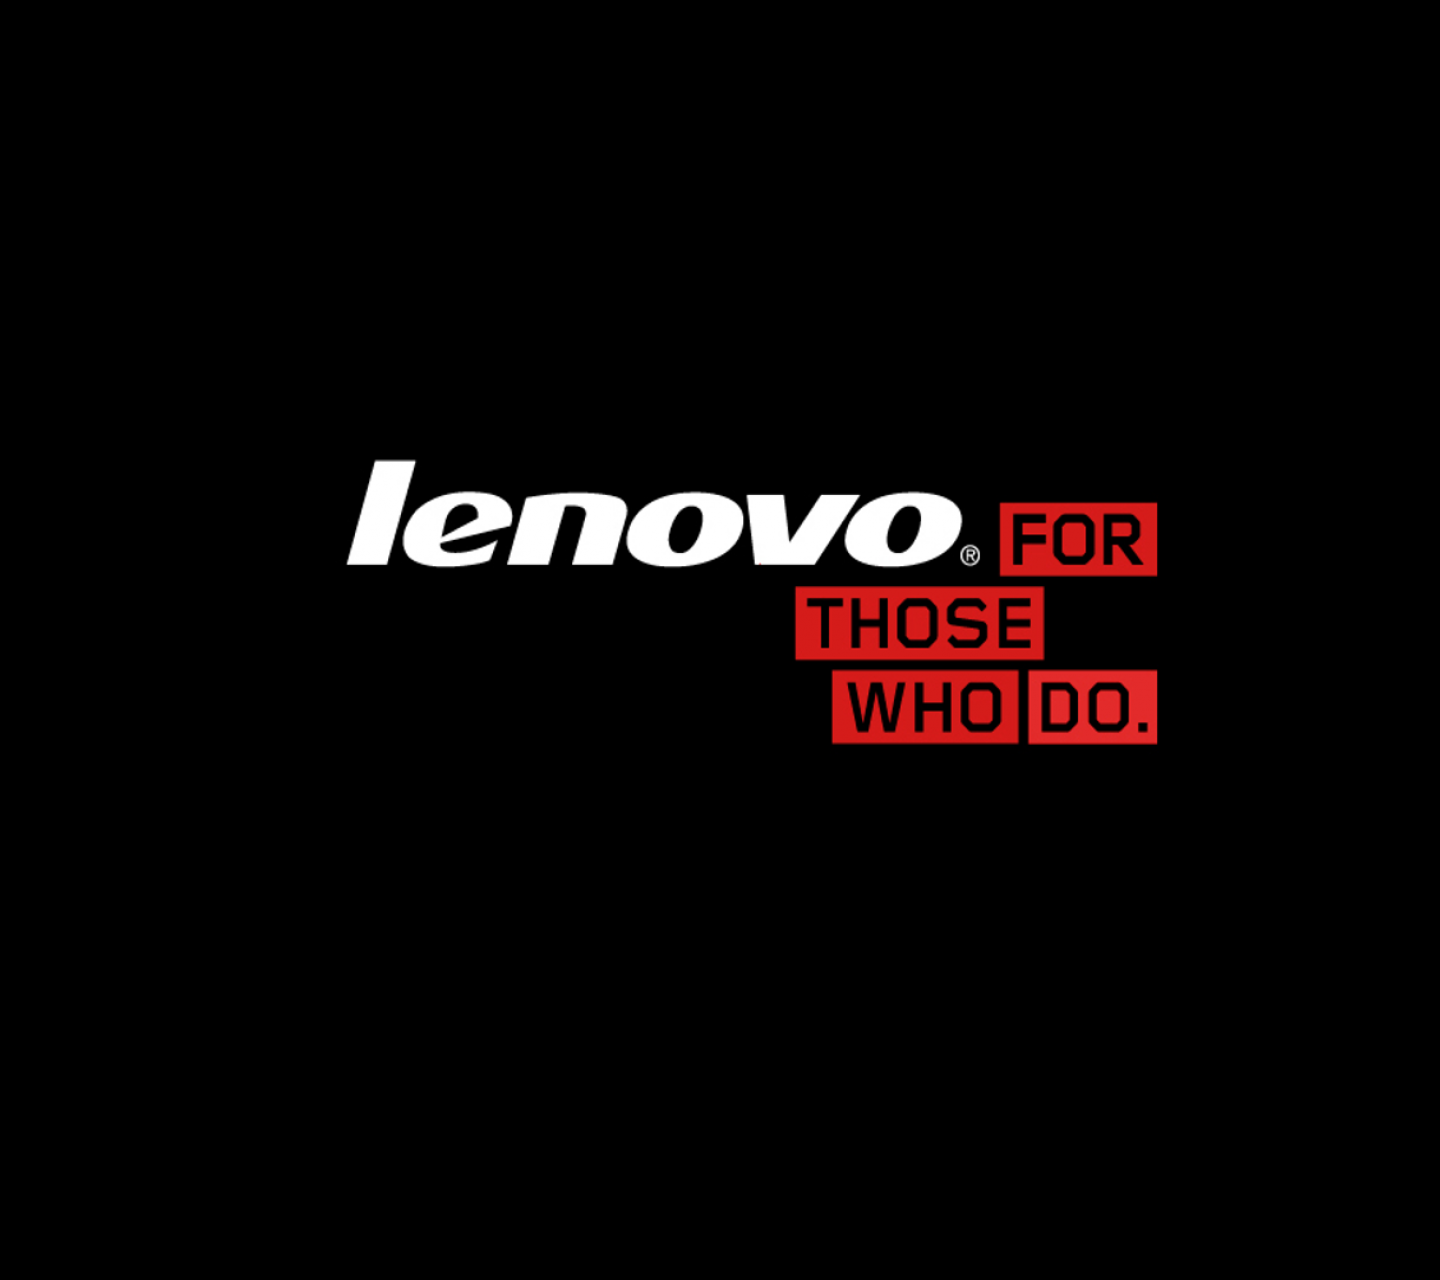 Full Hd Wallpaper For Laptop Lenovo - HD Wallpaper 